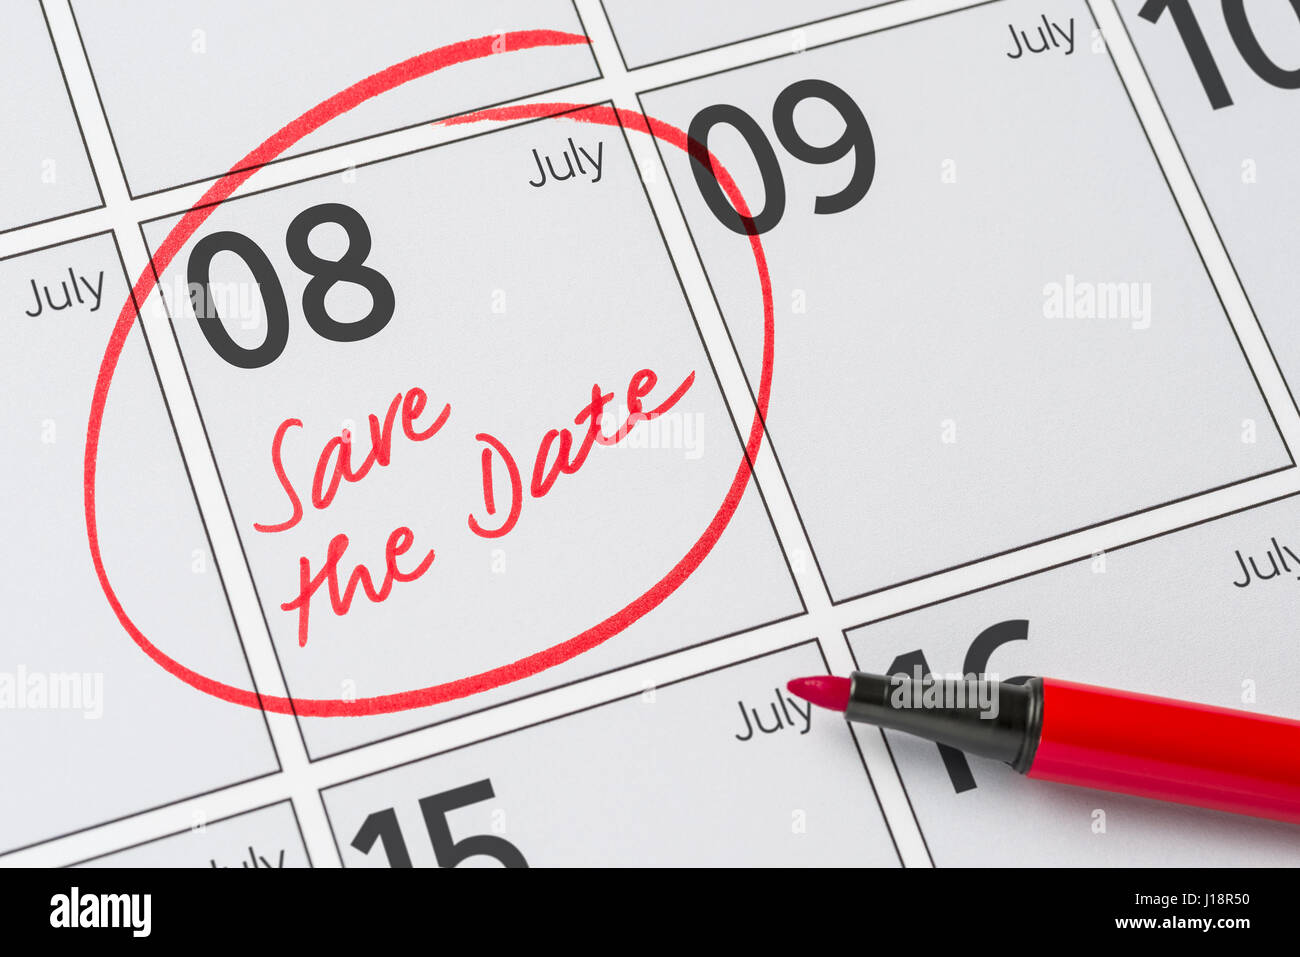 Enregistrer la date inscrite sur un calendrier - Juillet 08 Banque D'Images